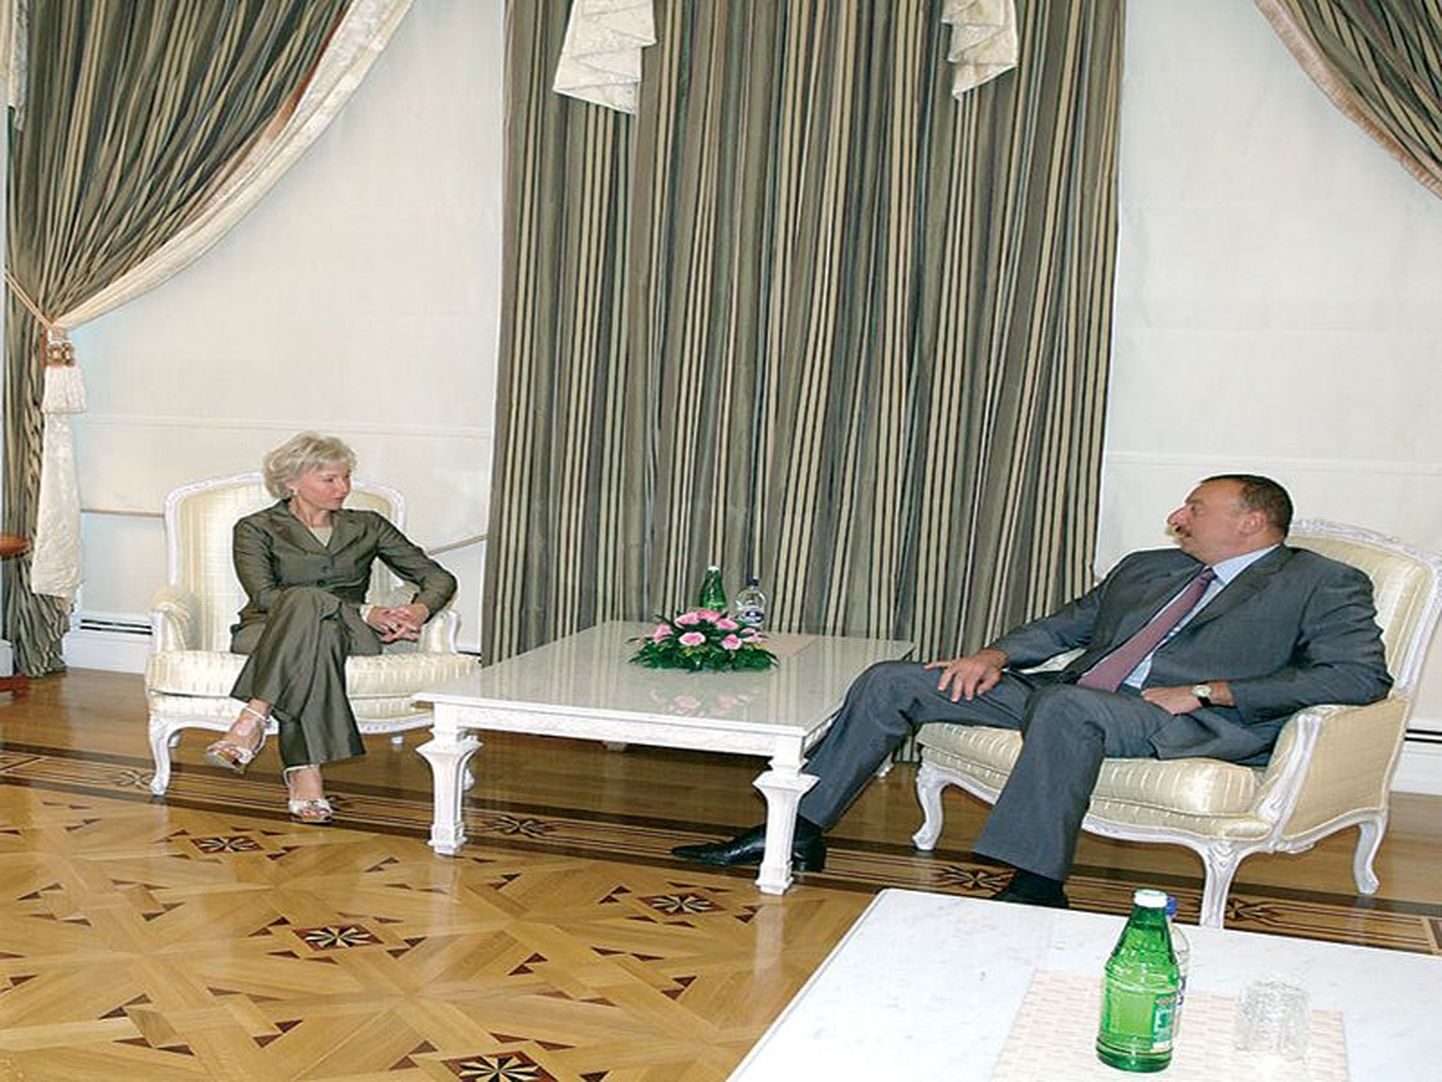 Летом 2008 года президент Азербайджана Ильхам Алиев принимал тогдашнего вице-спикера эстонского парламента Кристийну Оюланд. Это был один из многих ее визитов в Баку. По словам Оюланд, она наблюдает за Азербайджаном еще со второй половины 1990-х годов, когда страна готовилось войти в Совет Европы.